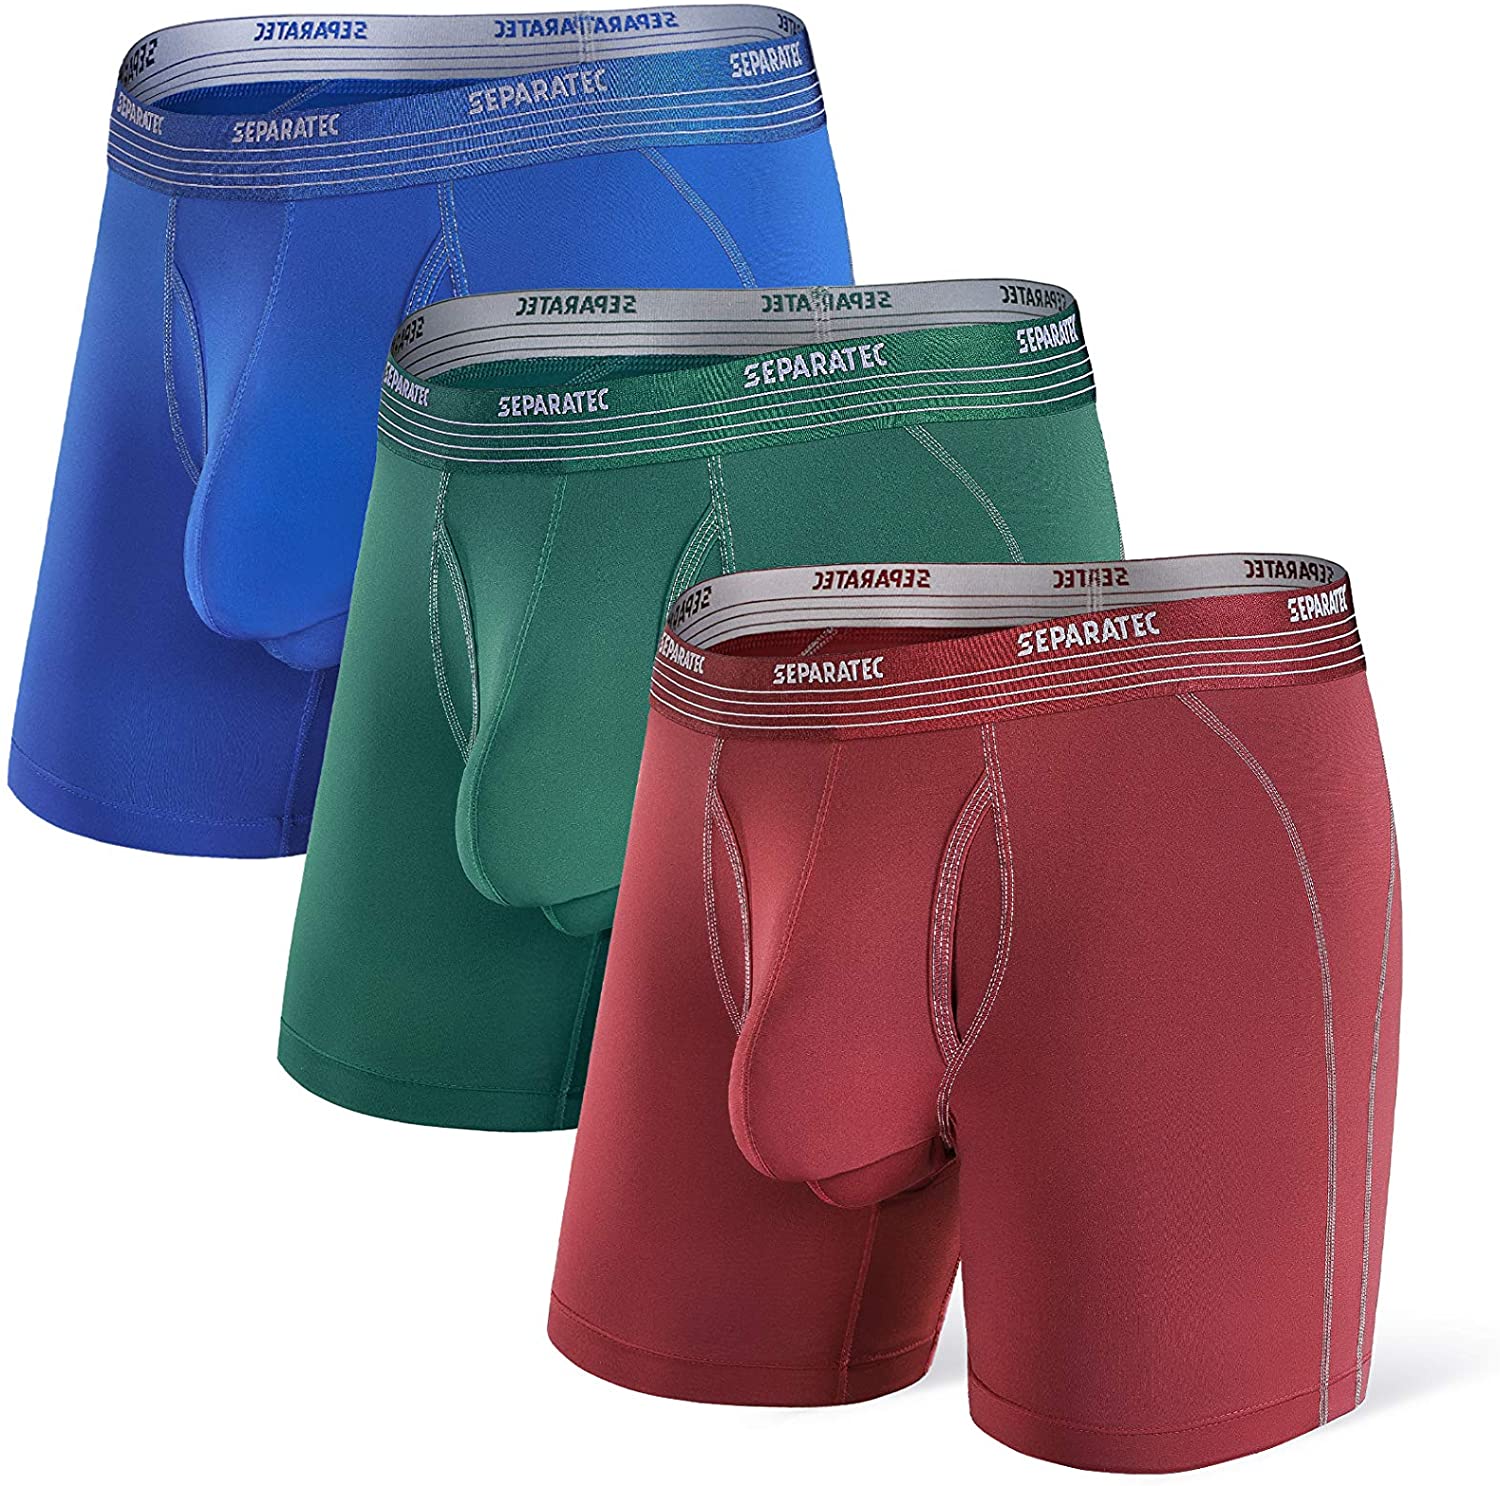 Separatec Dual Pouch Mens Underwear Quick Dry Boxer Briefs For Men